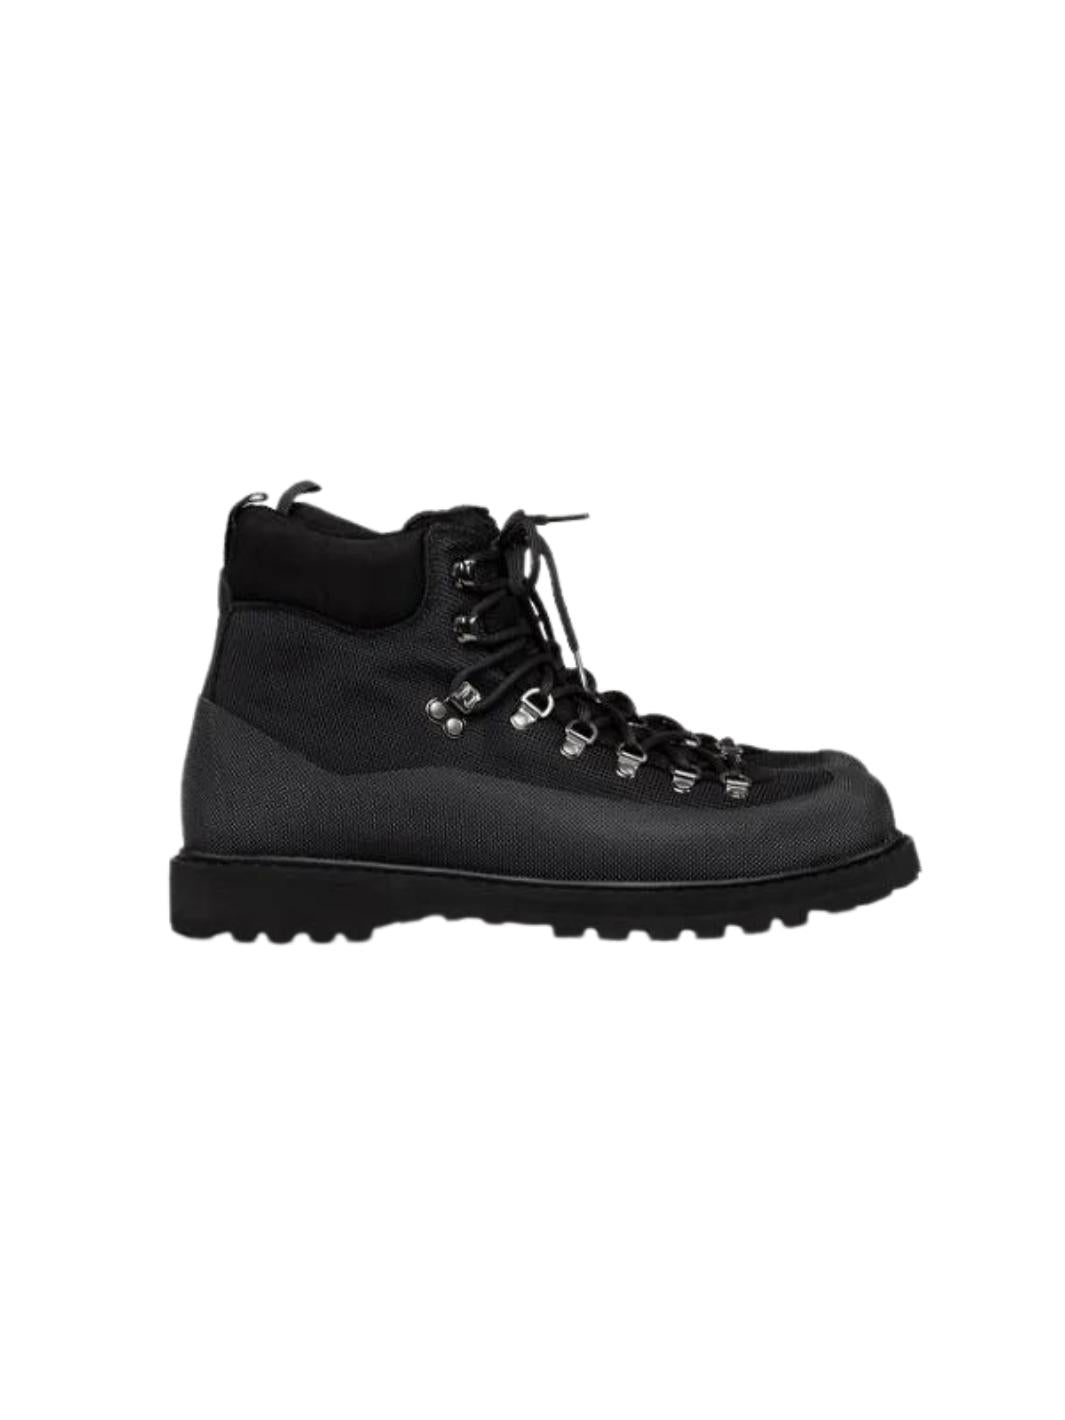 Diemme Shoes Boots | Roccia Vet Sport Black Fabric